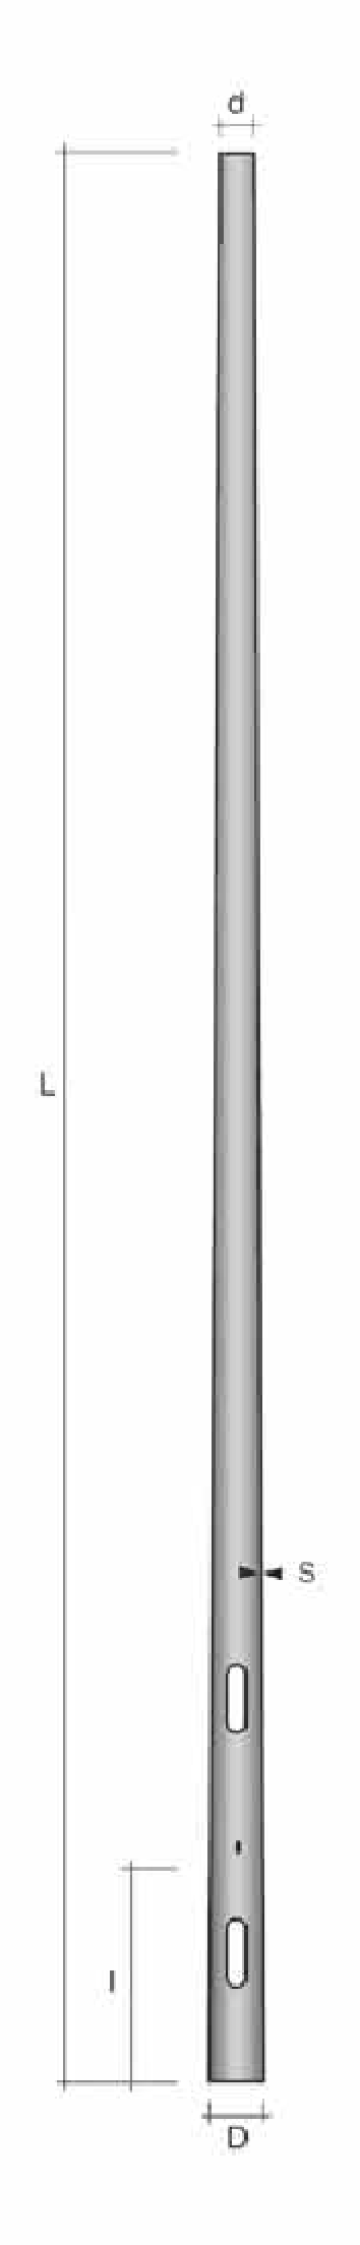 Stalp conic ingropat h=6.8m de la Metalsafe Lighting Srl